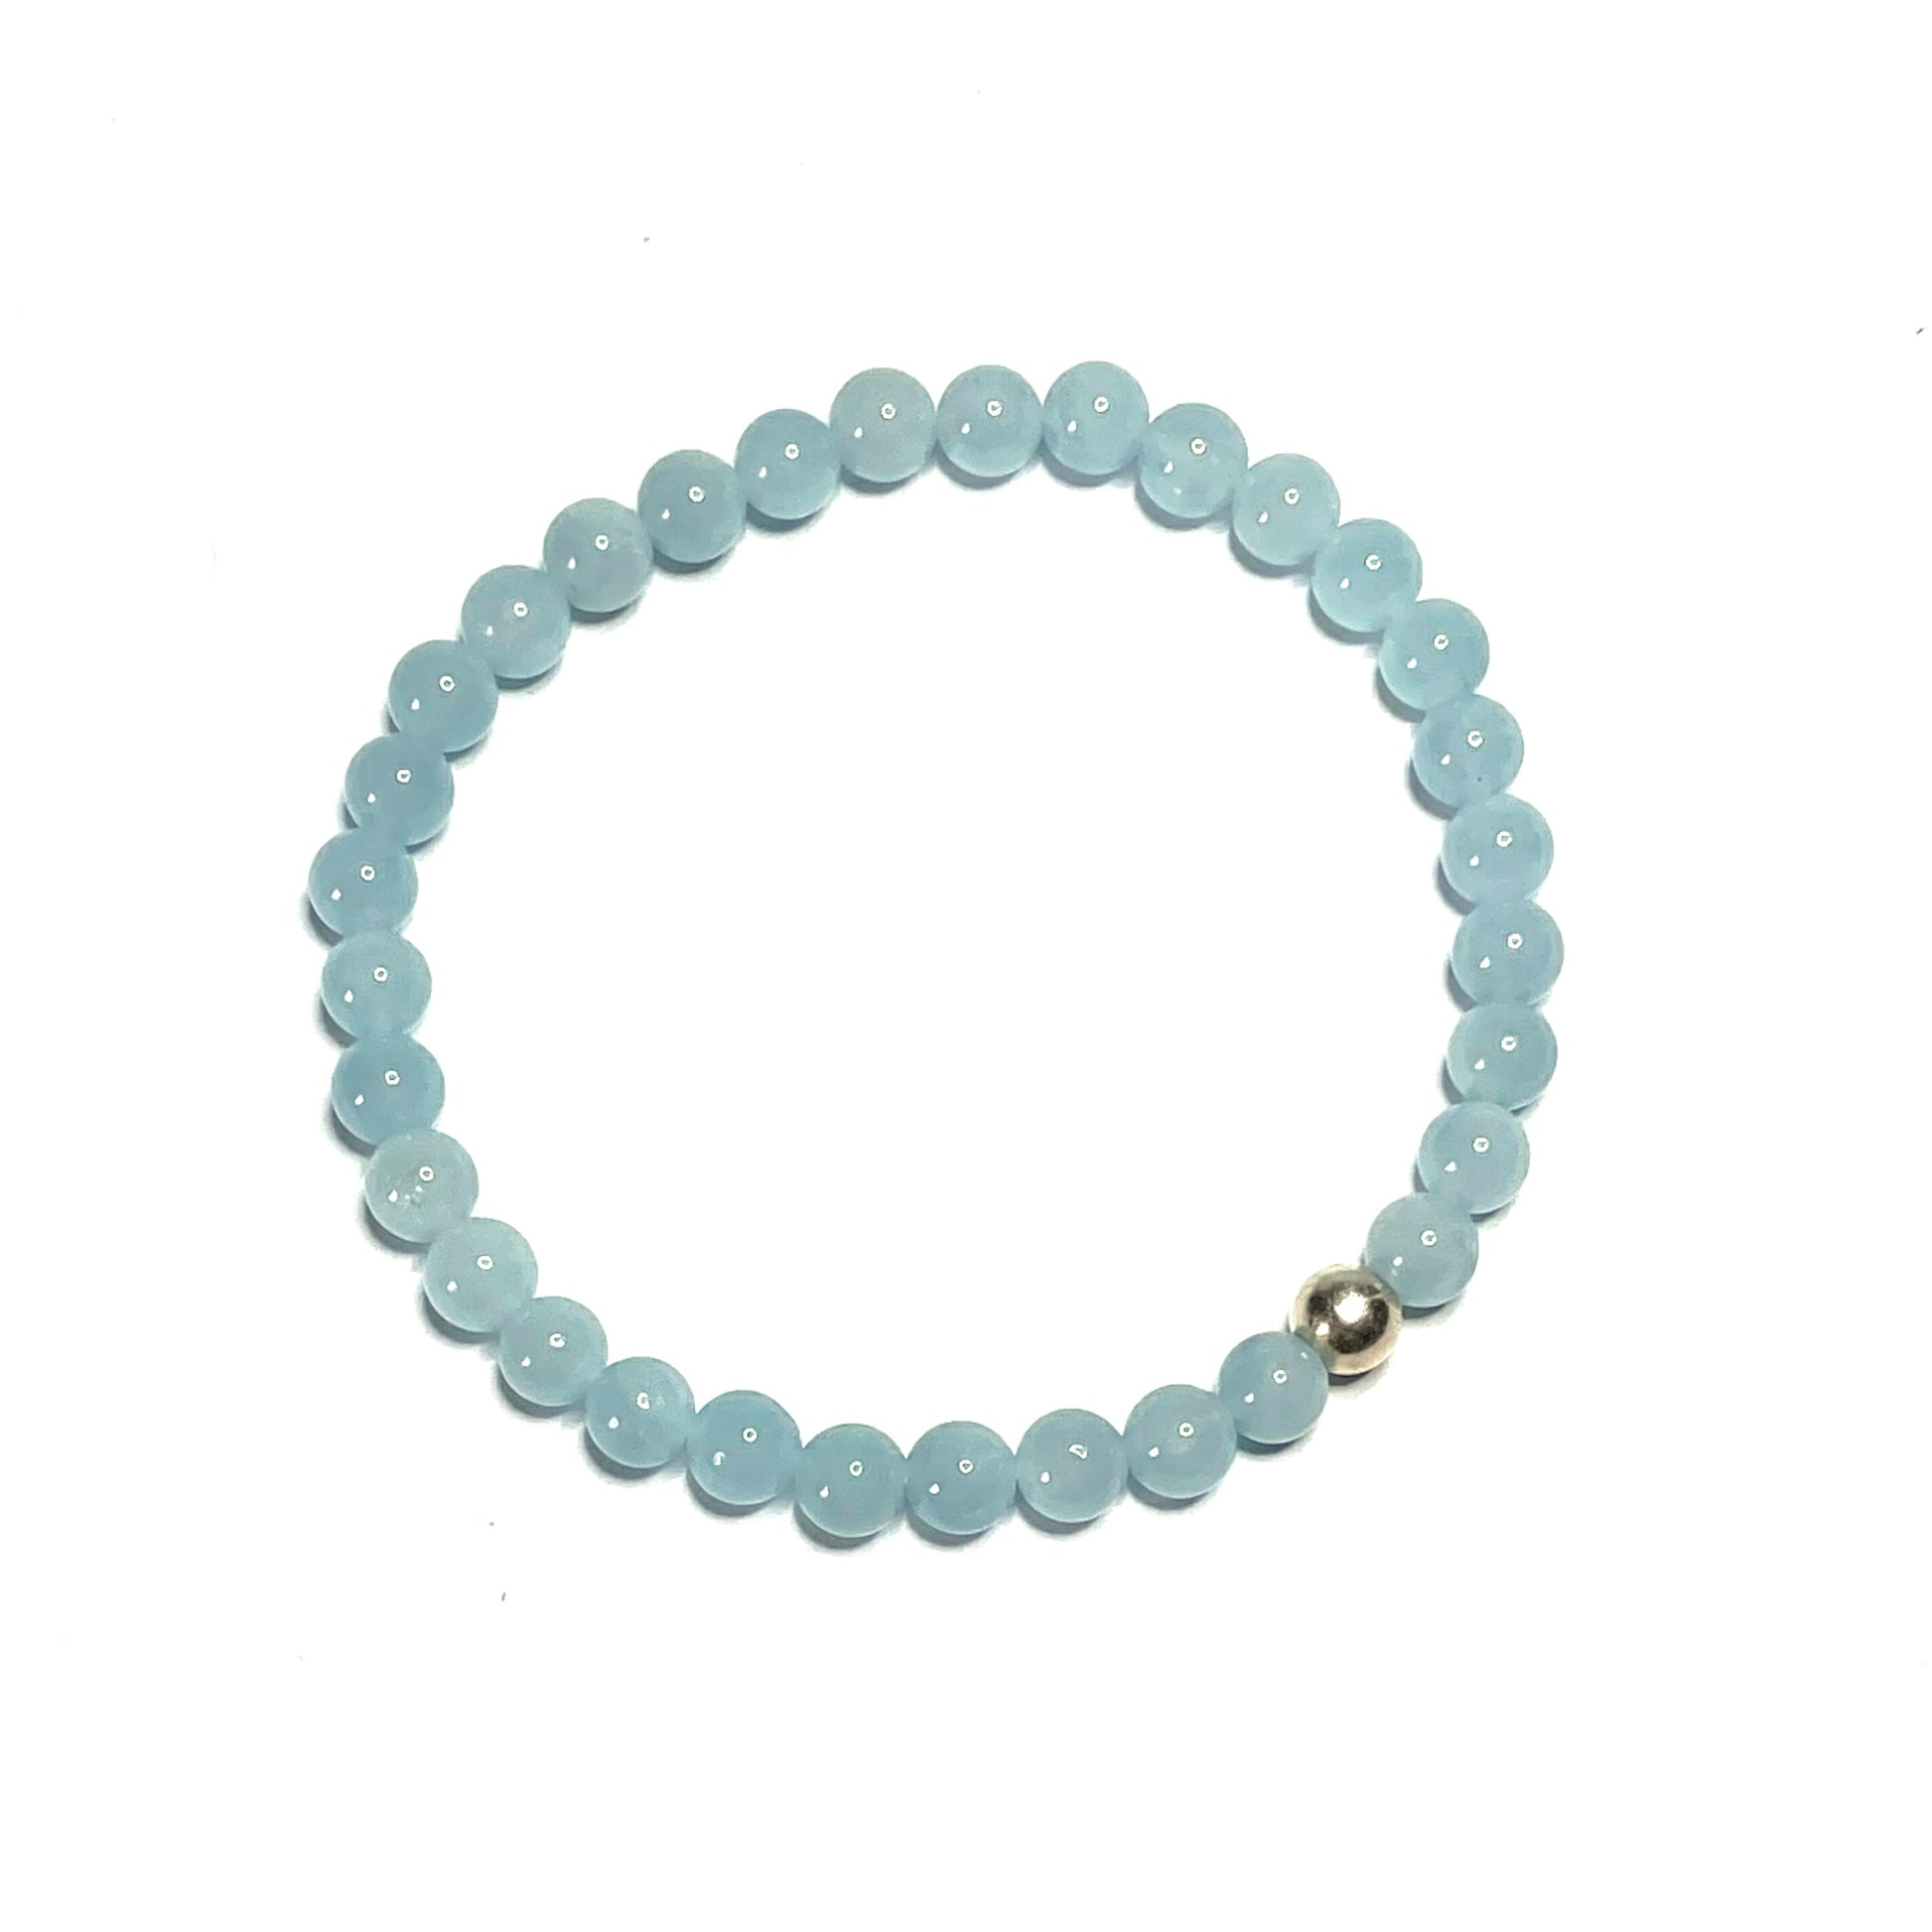 6mm Aquamarine gemstone bracelet